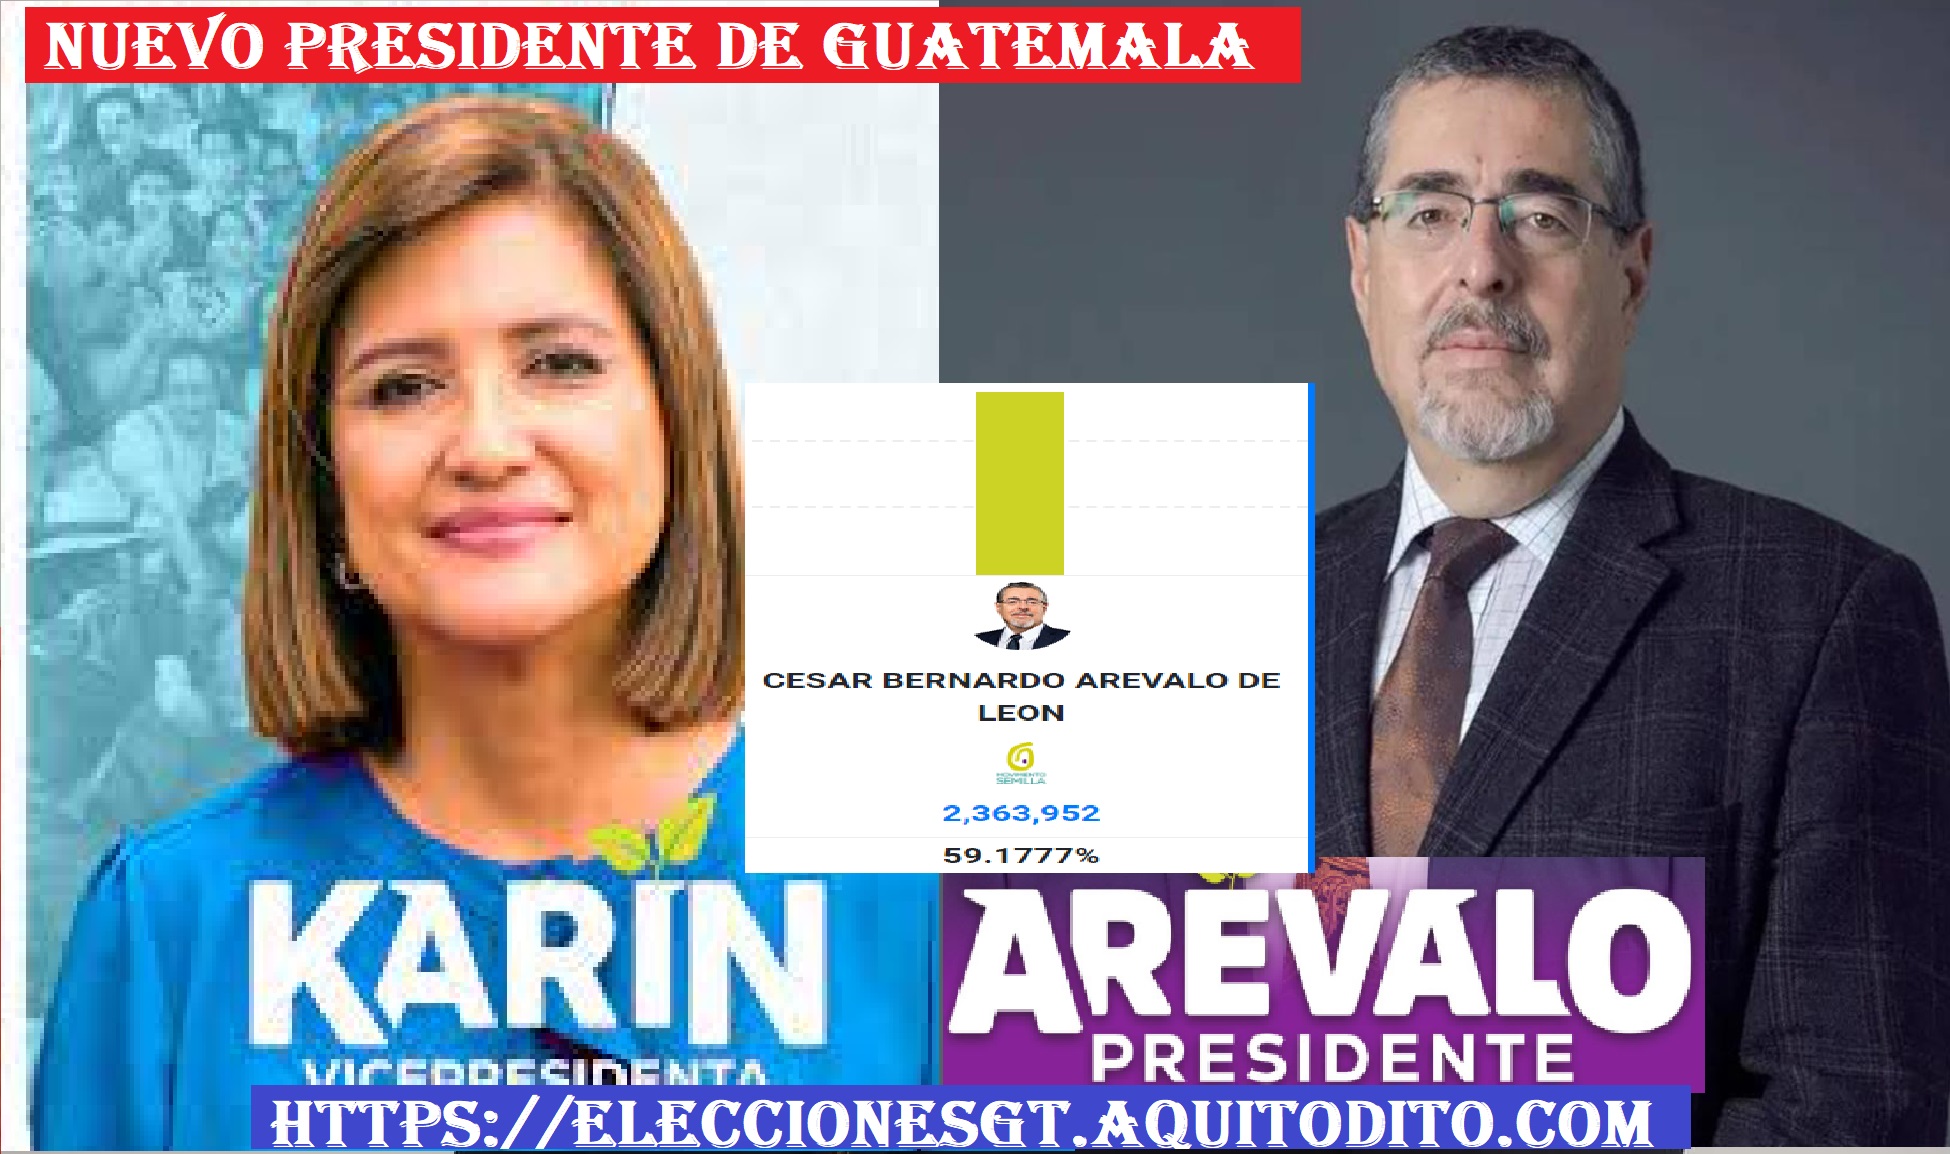 Bernardo Arévalo Nuevo Presidente de Guatemala en las Elecciones 2023